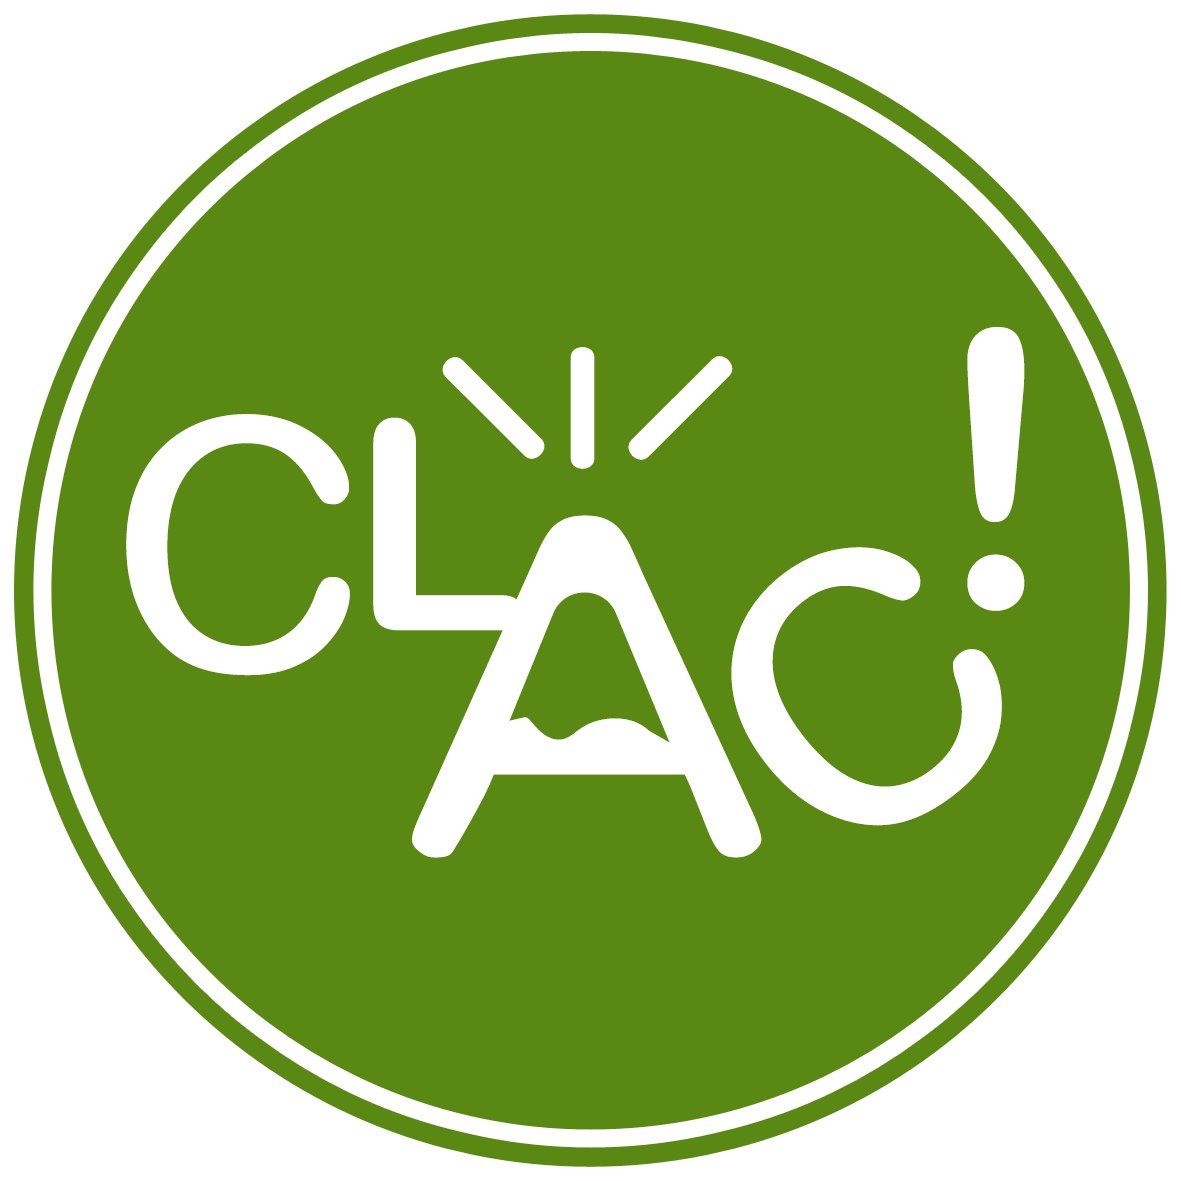 CLAC! c'est la Conserverie Locale Artisanale & Créative basée au coeur de l'Auvergne. Créations apéritives à base de légumes et/ou de fromages ! #conserverie